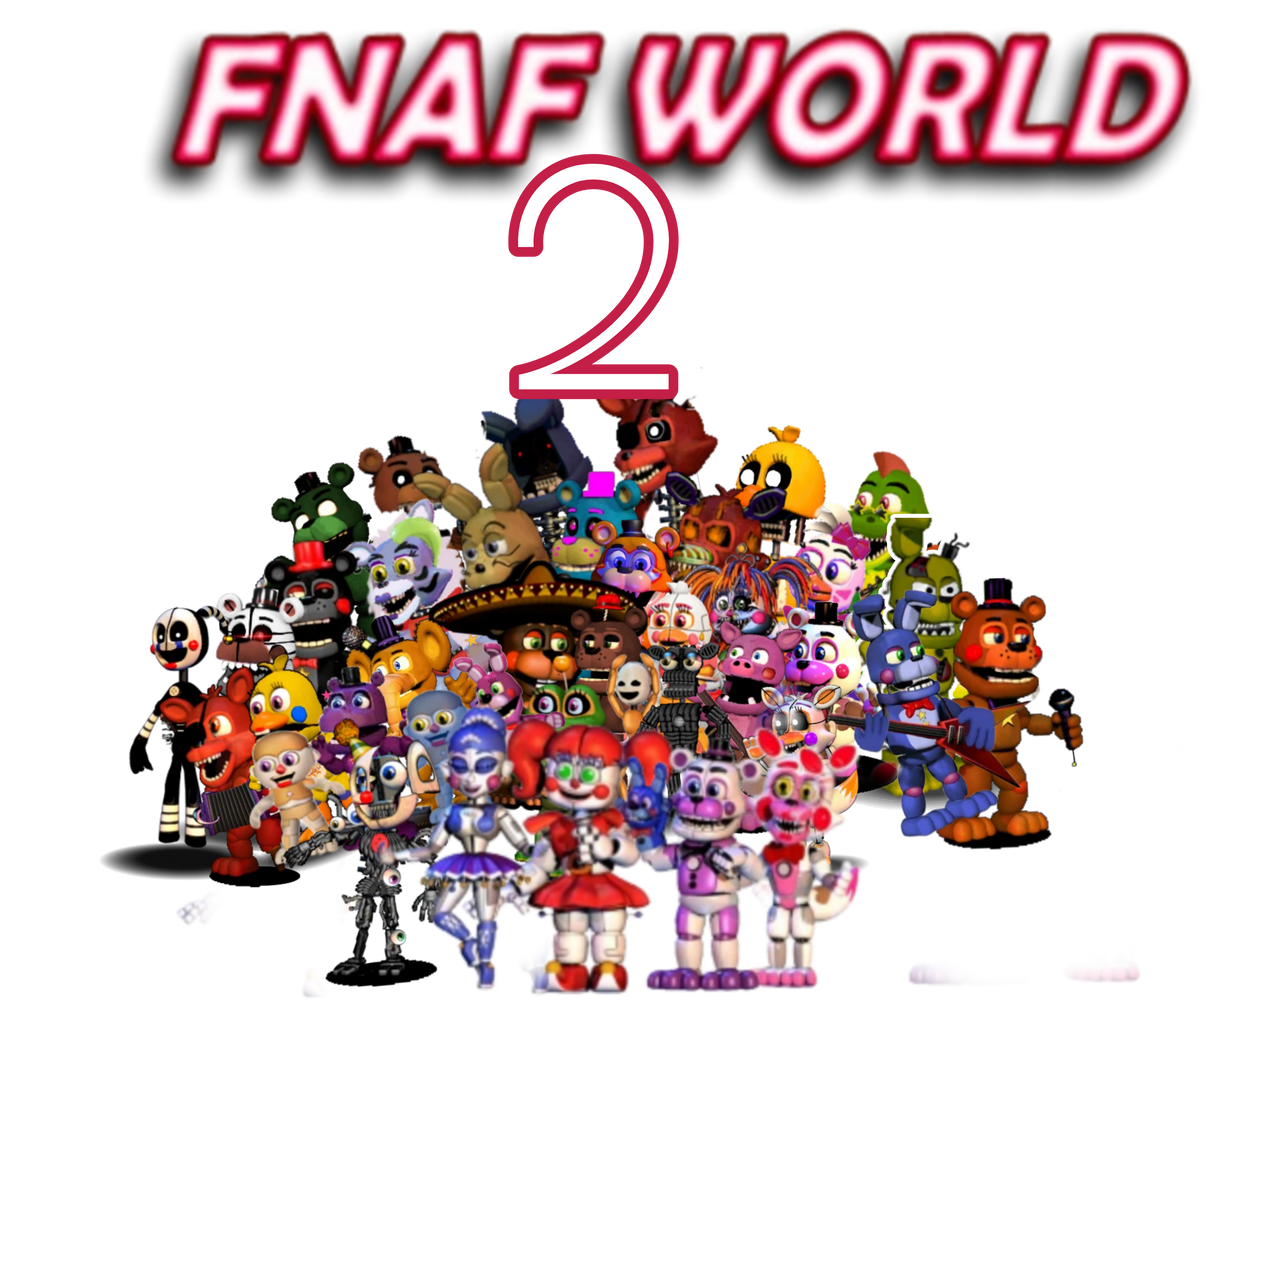 FNAF World 2 by CJBJ25 on DeviantArt